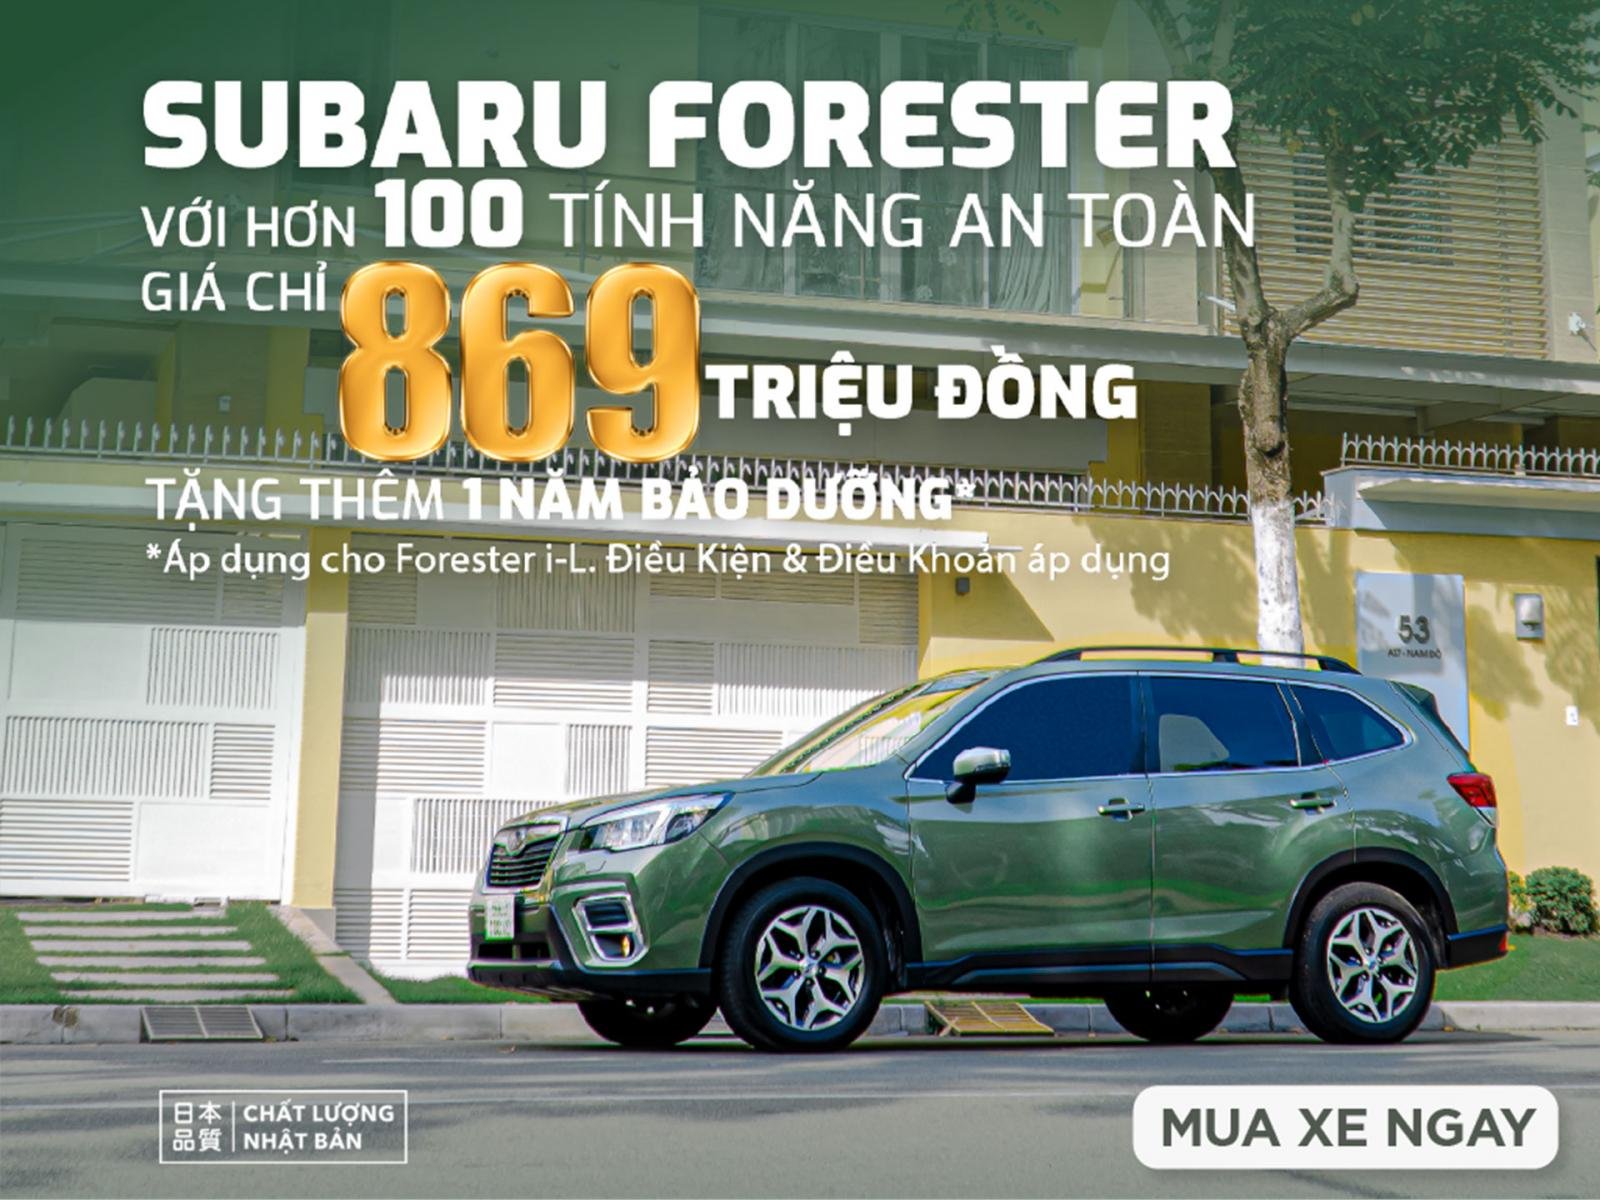 Subaru Forester giảm giá 100 triệu đồng tiền mặt